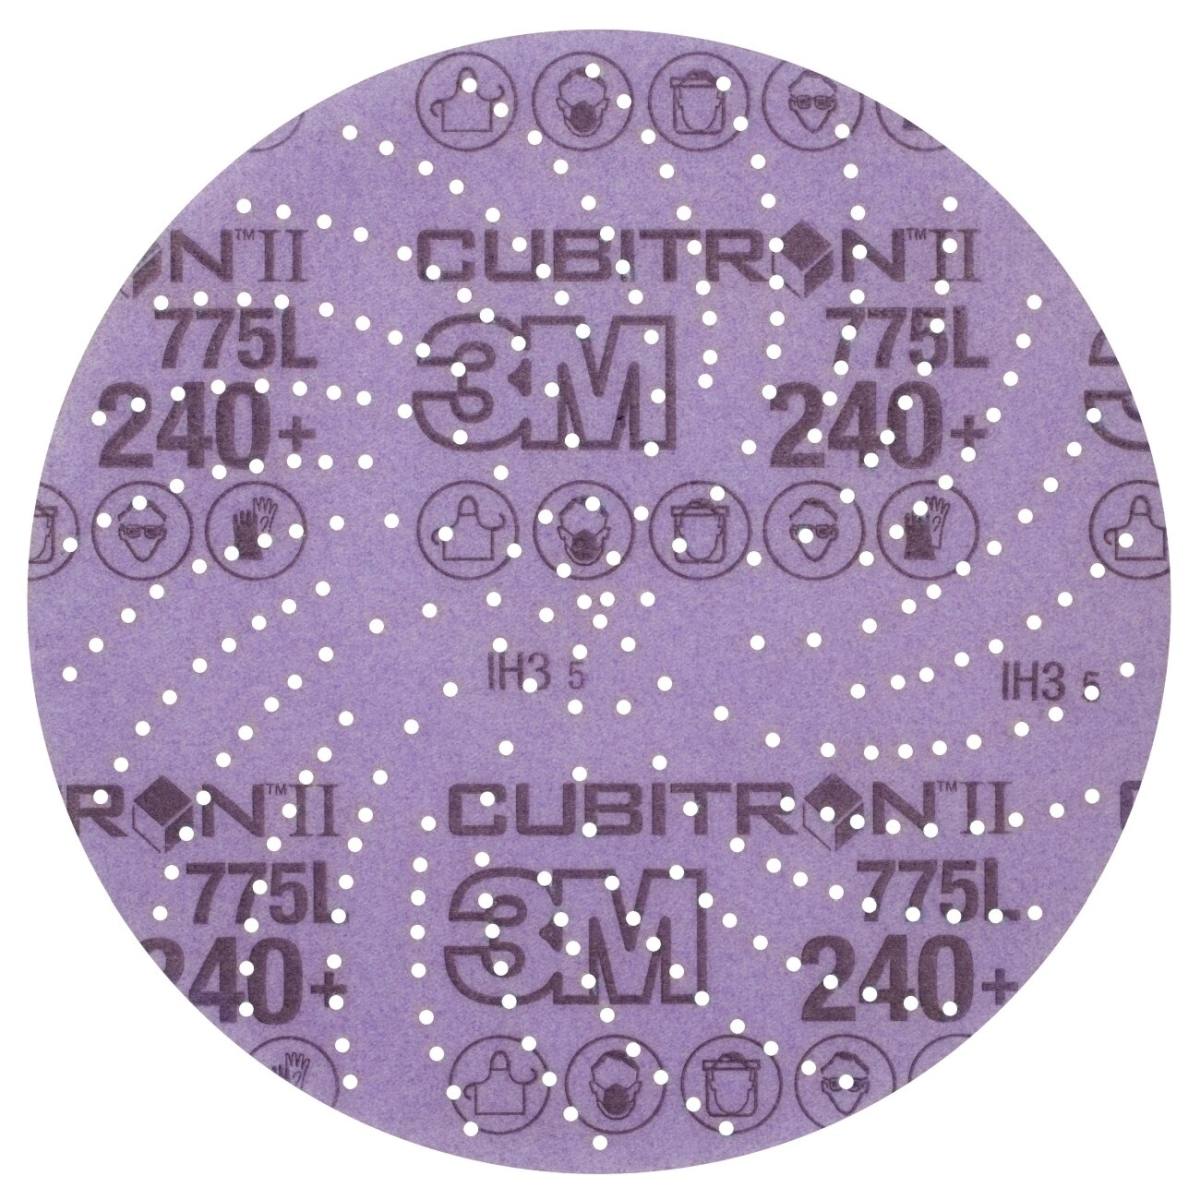 3M Cubitron II Hookit Disque pour film 775L, 150 mm, 240 , multihole #47098